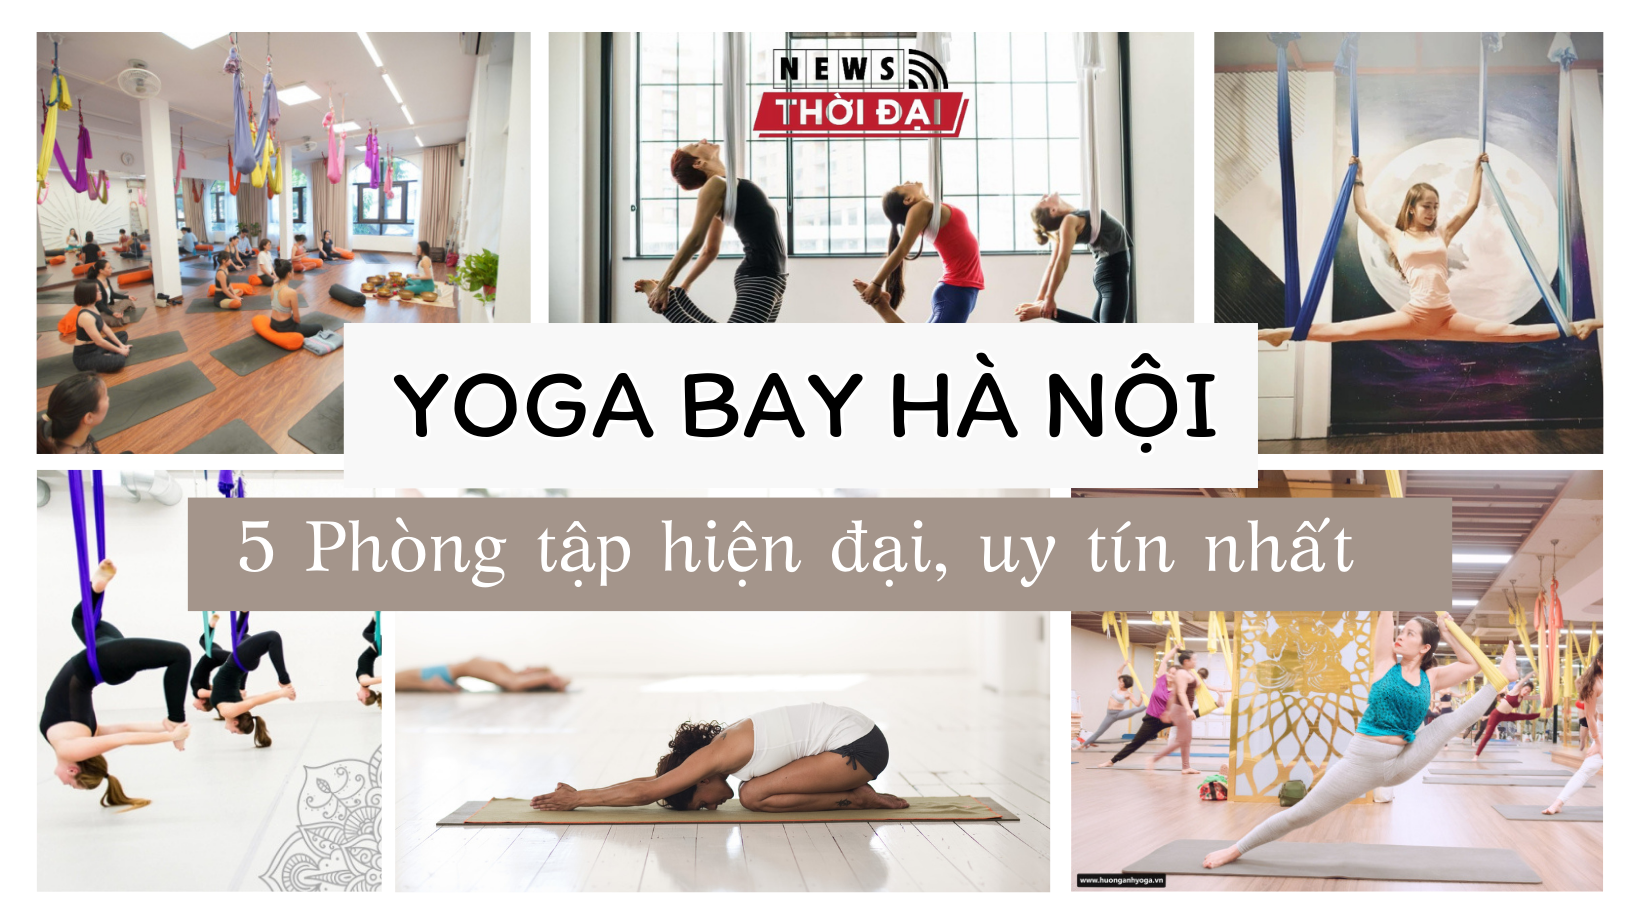 Yoga Bay Hà Nội – 5 Phòng tập hiện đại, uy tín nhất